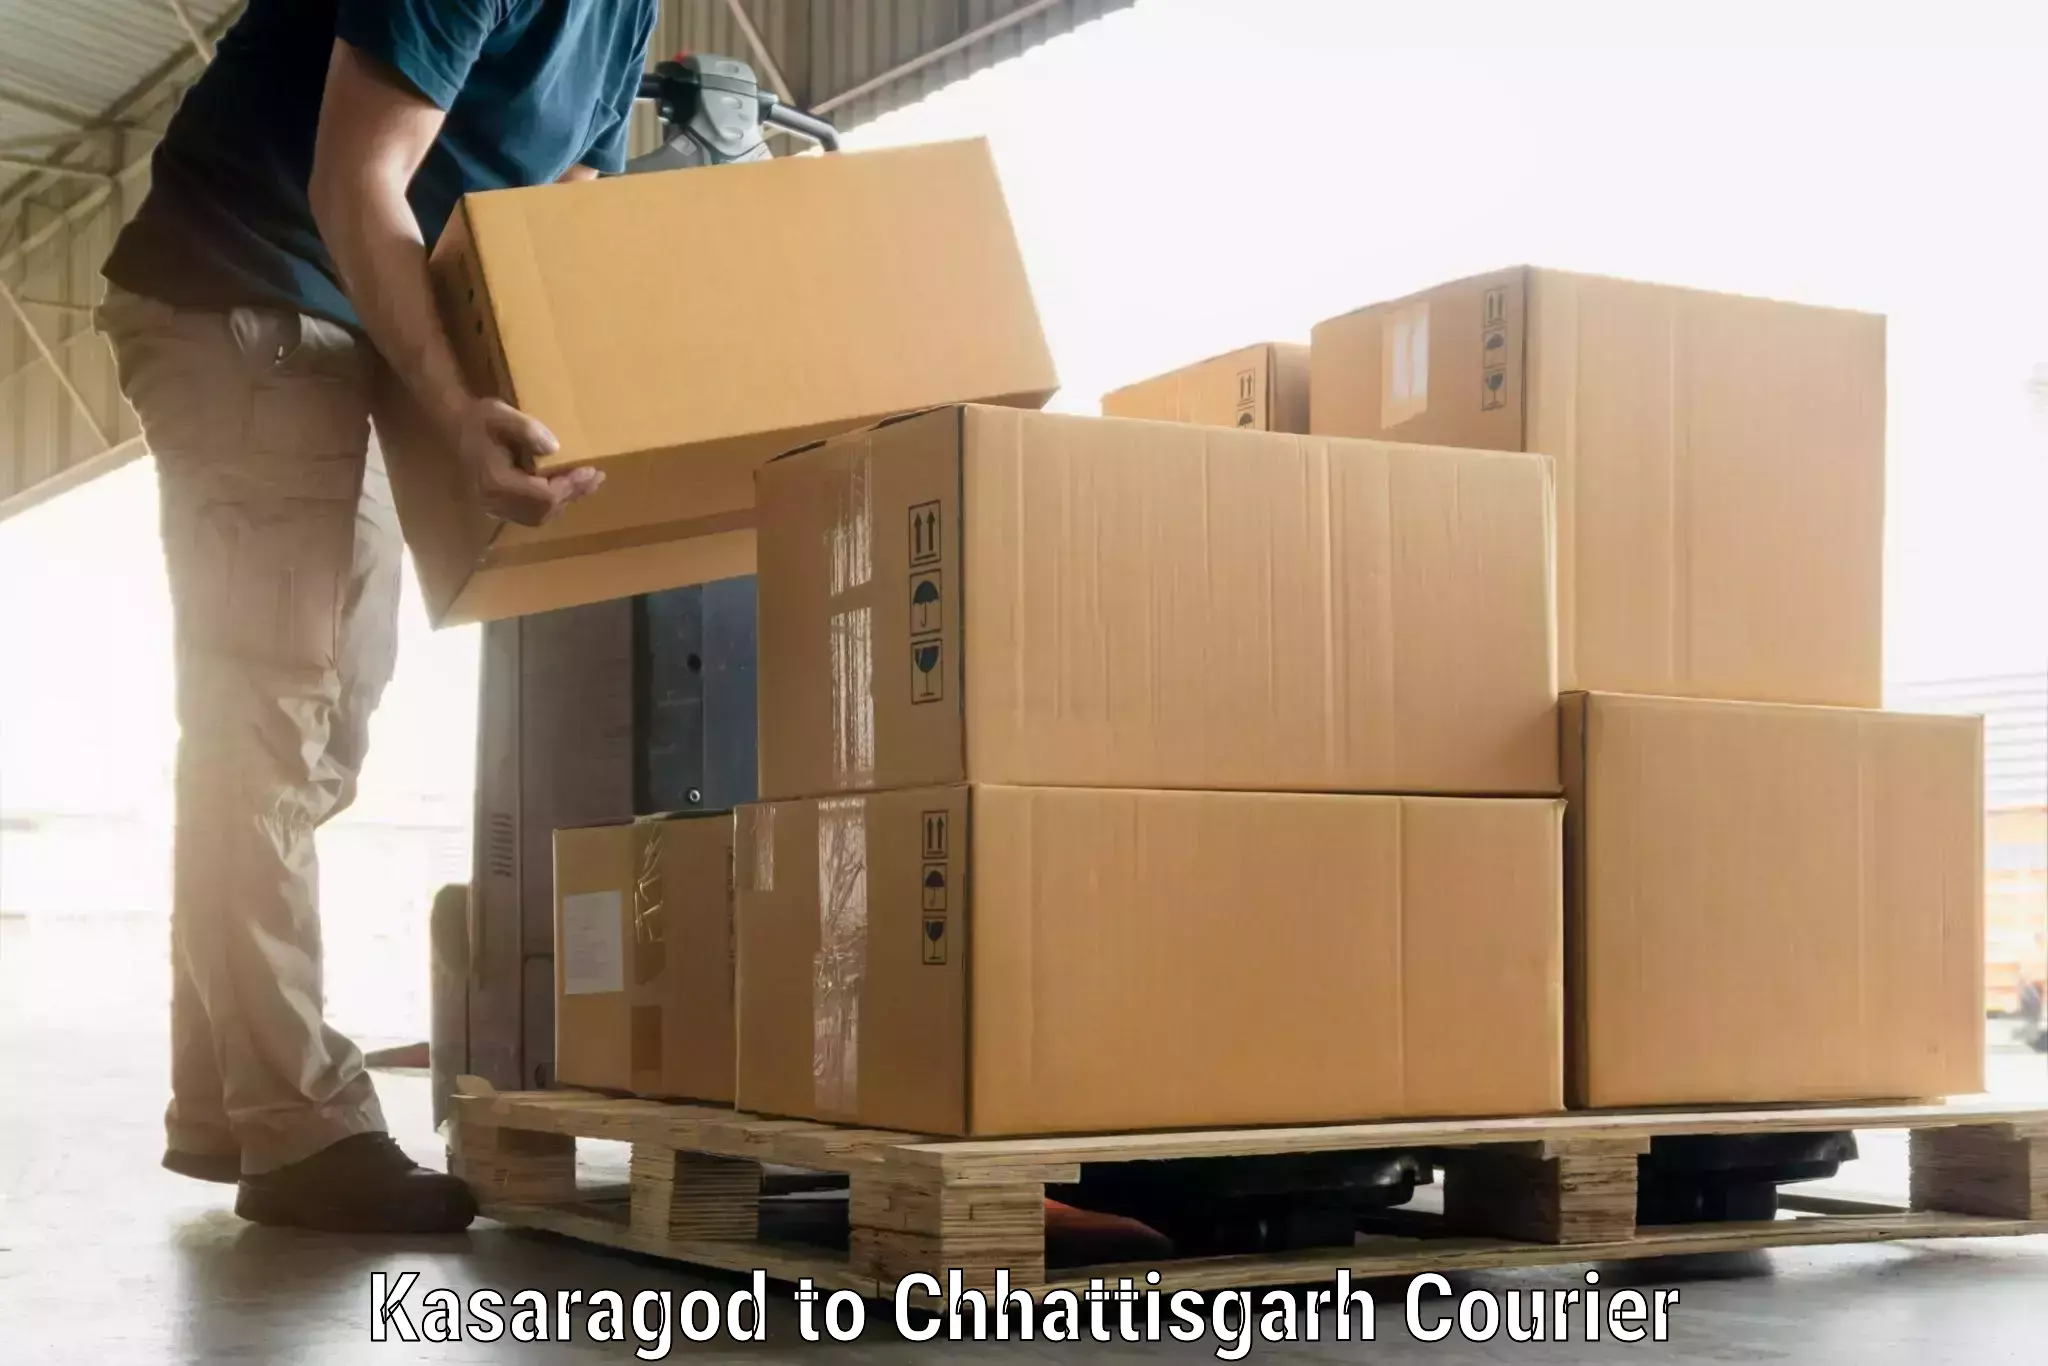 Luggage shipment tracking Kasaragod to Pandariya